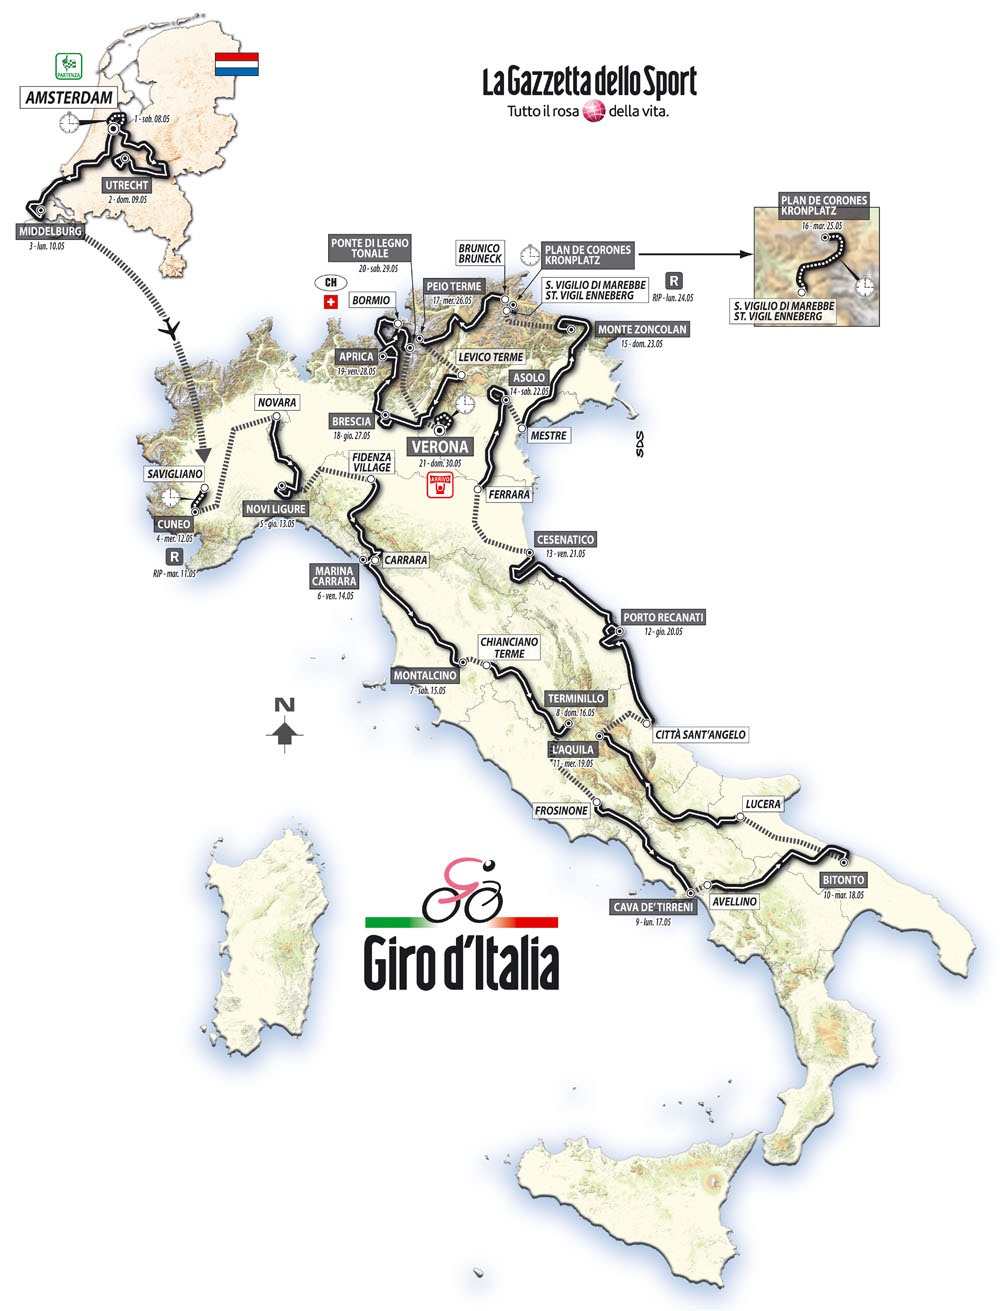 Streckenverlauf Giro dItalia 2010